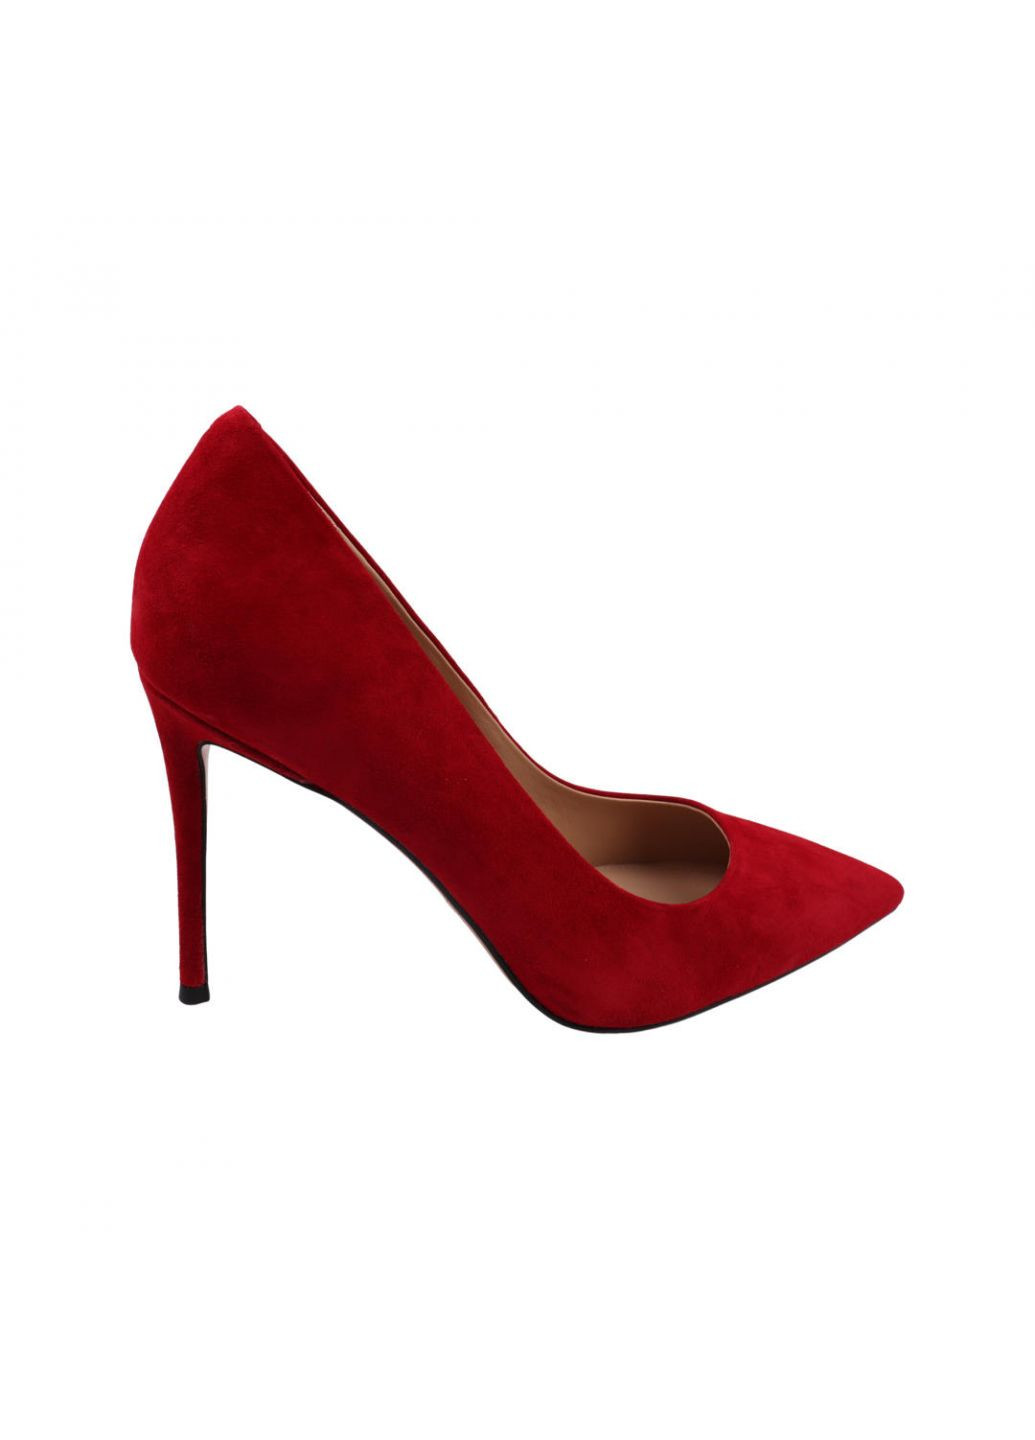 Туфлі жіночі червоні натуральна замша Djovannia 49-22dt (257439587)